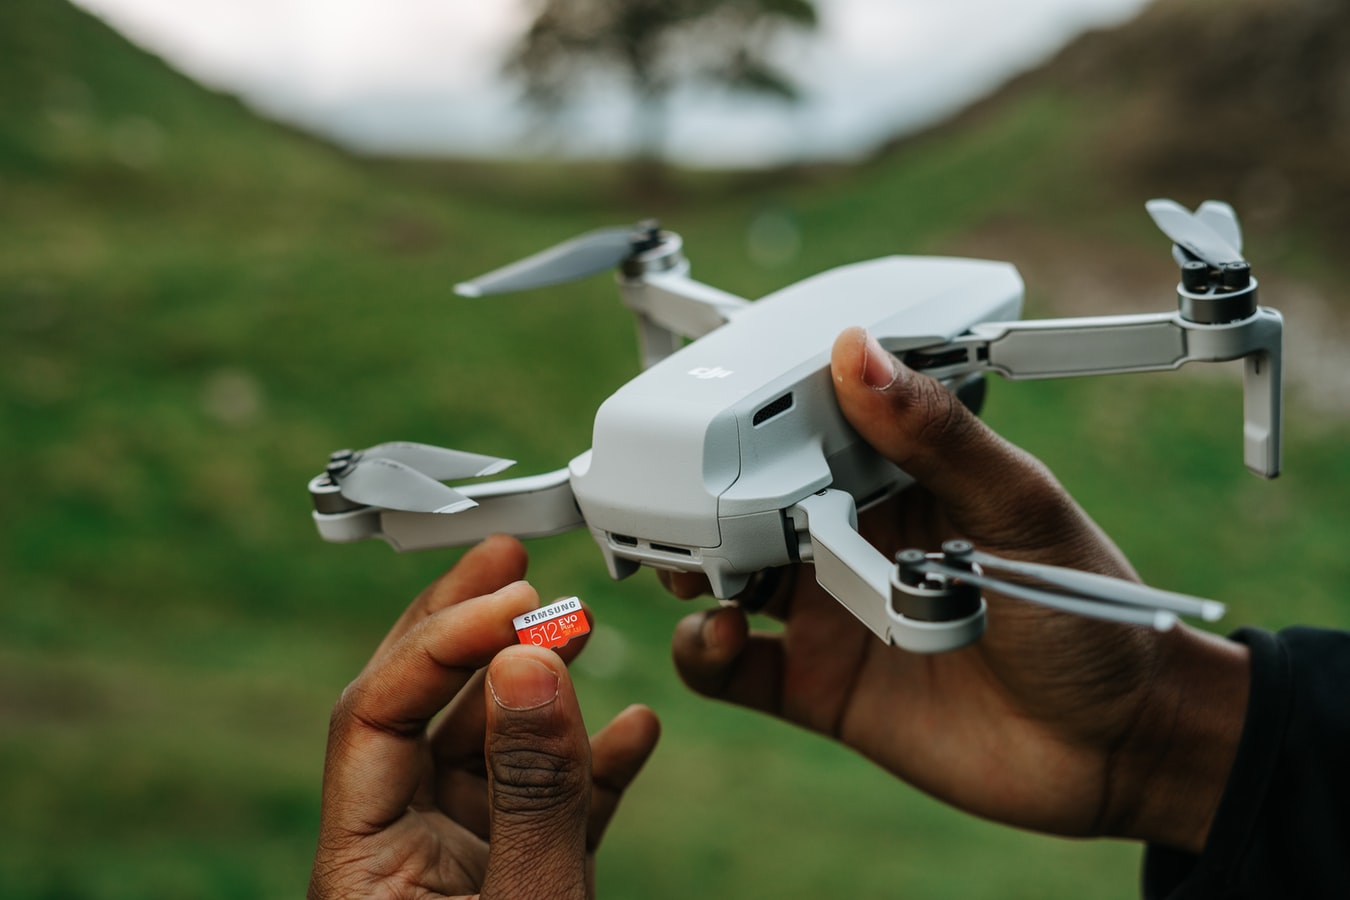 Wij willen je met dit artikel graag informeren over drones onder de 250 gram die je zonder registratie en / of vliegbewijs kunt besturen